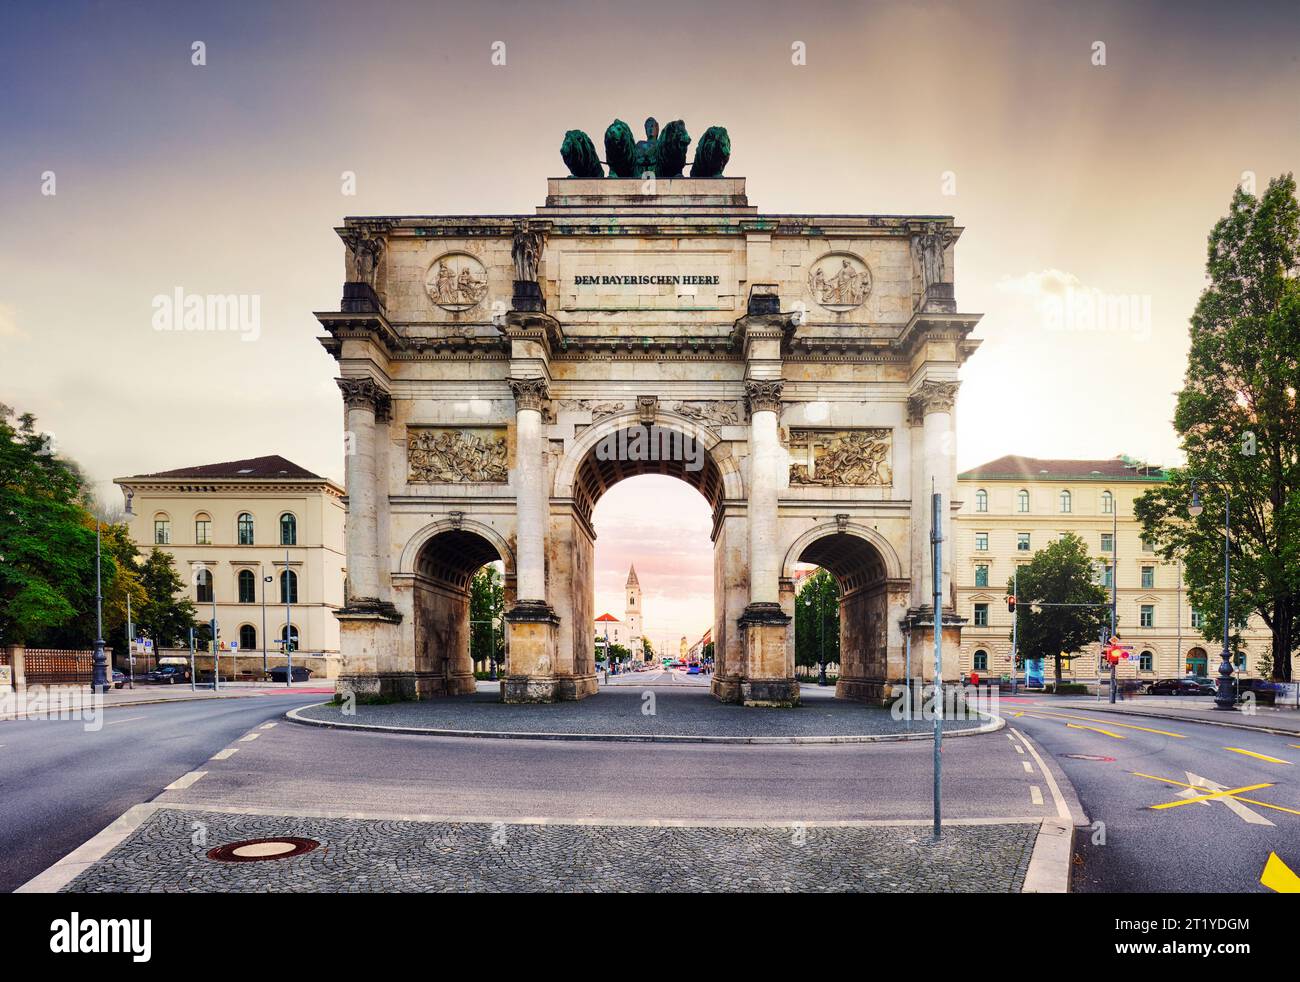 Coucher de soleil spectaculaire sur Siegestor - Arc de la porte de la victoire dans le centre-ville de Munich, Allemagne Banque D'Images